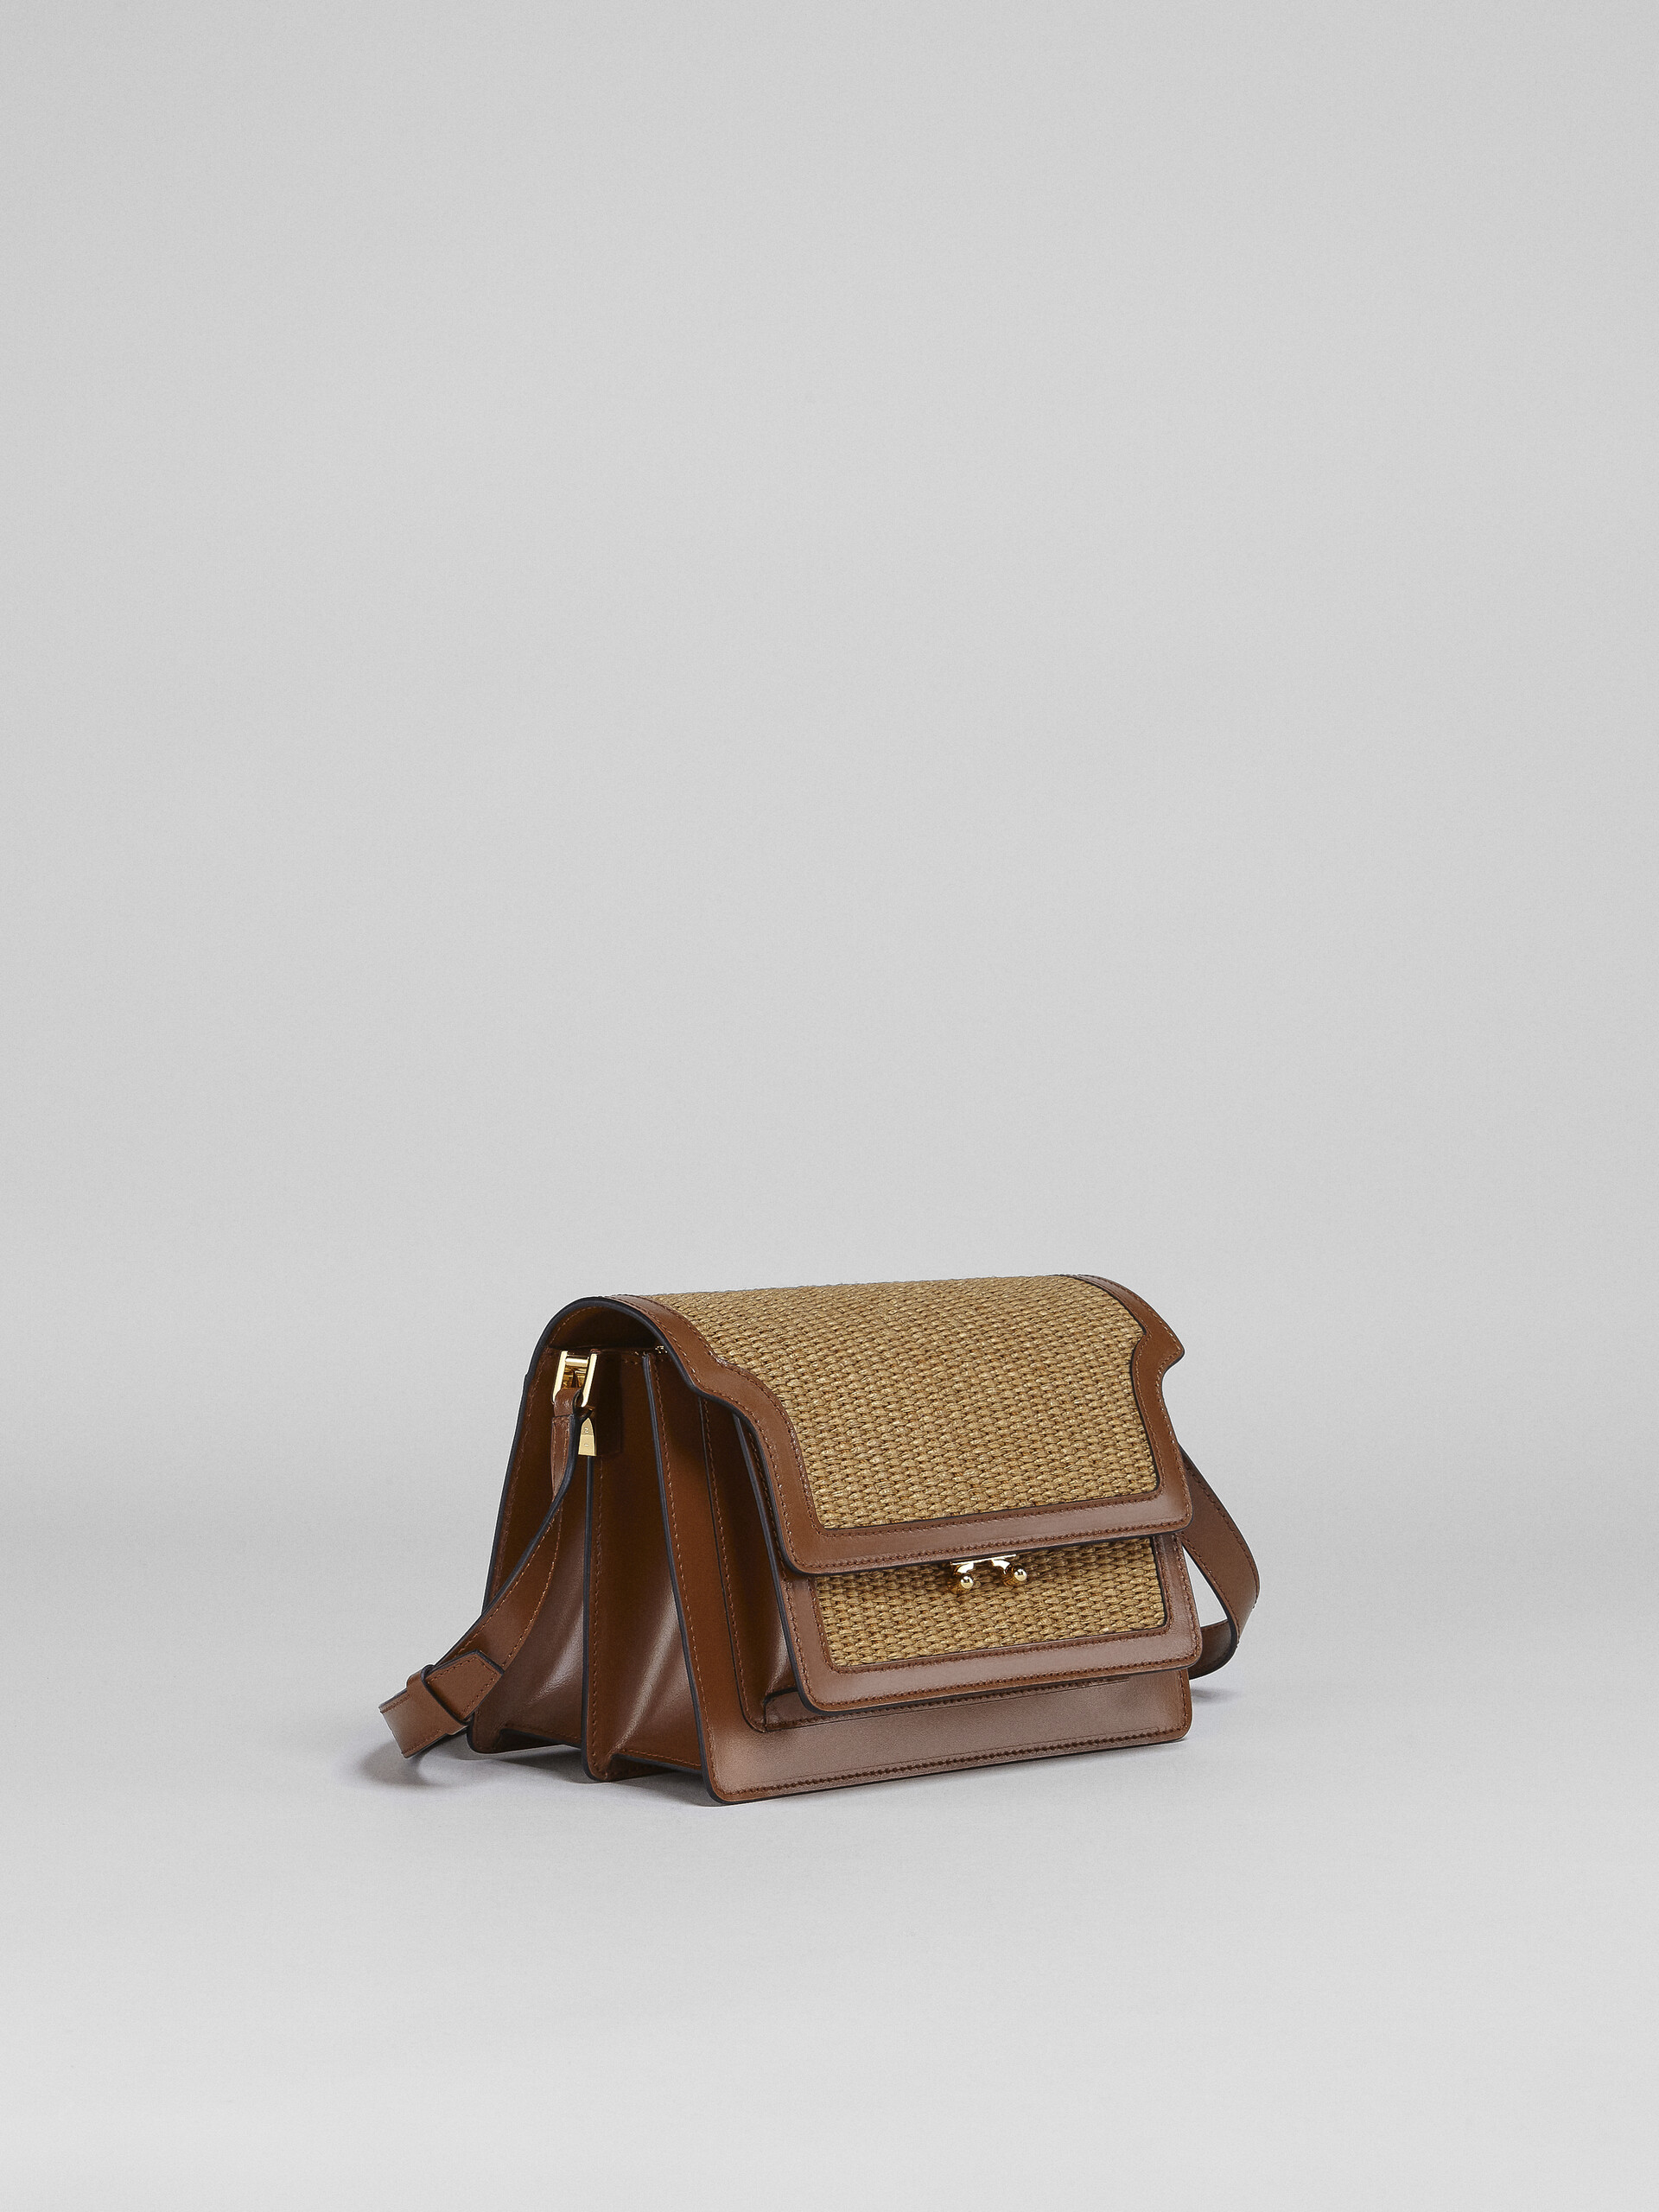 TRUNK SOFT medium bag in brown leather and raffia - Shoulder Bag - Image 6